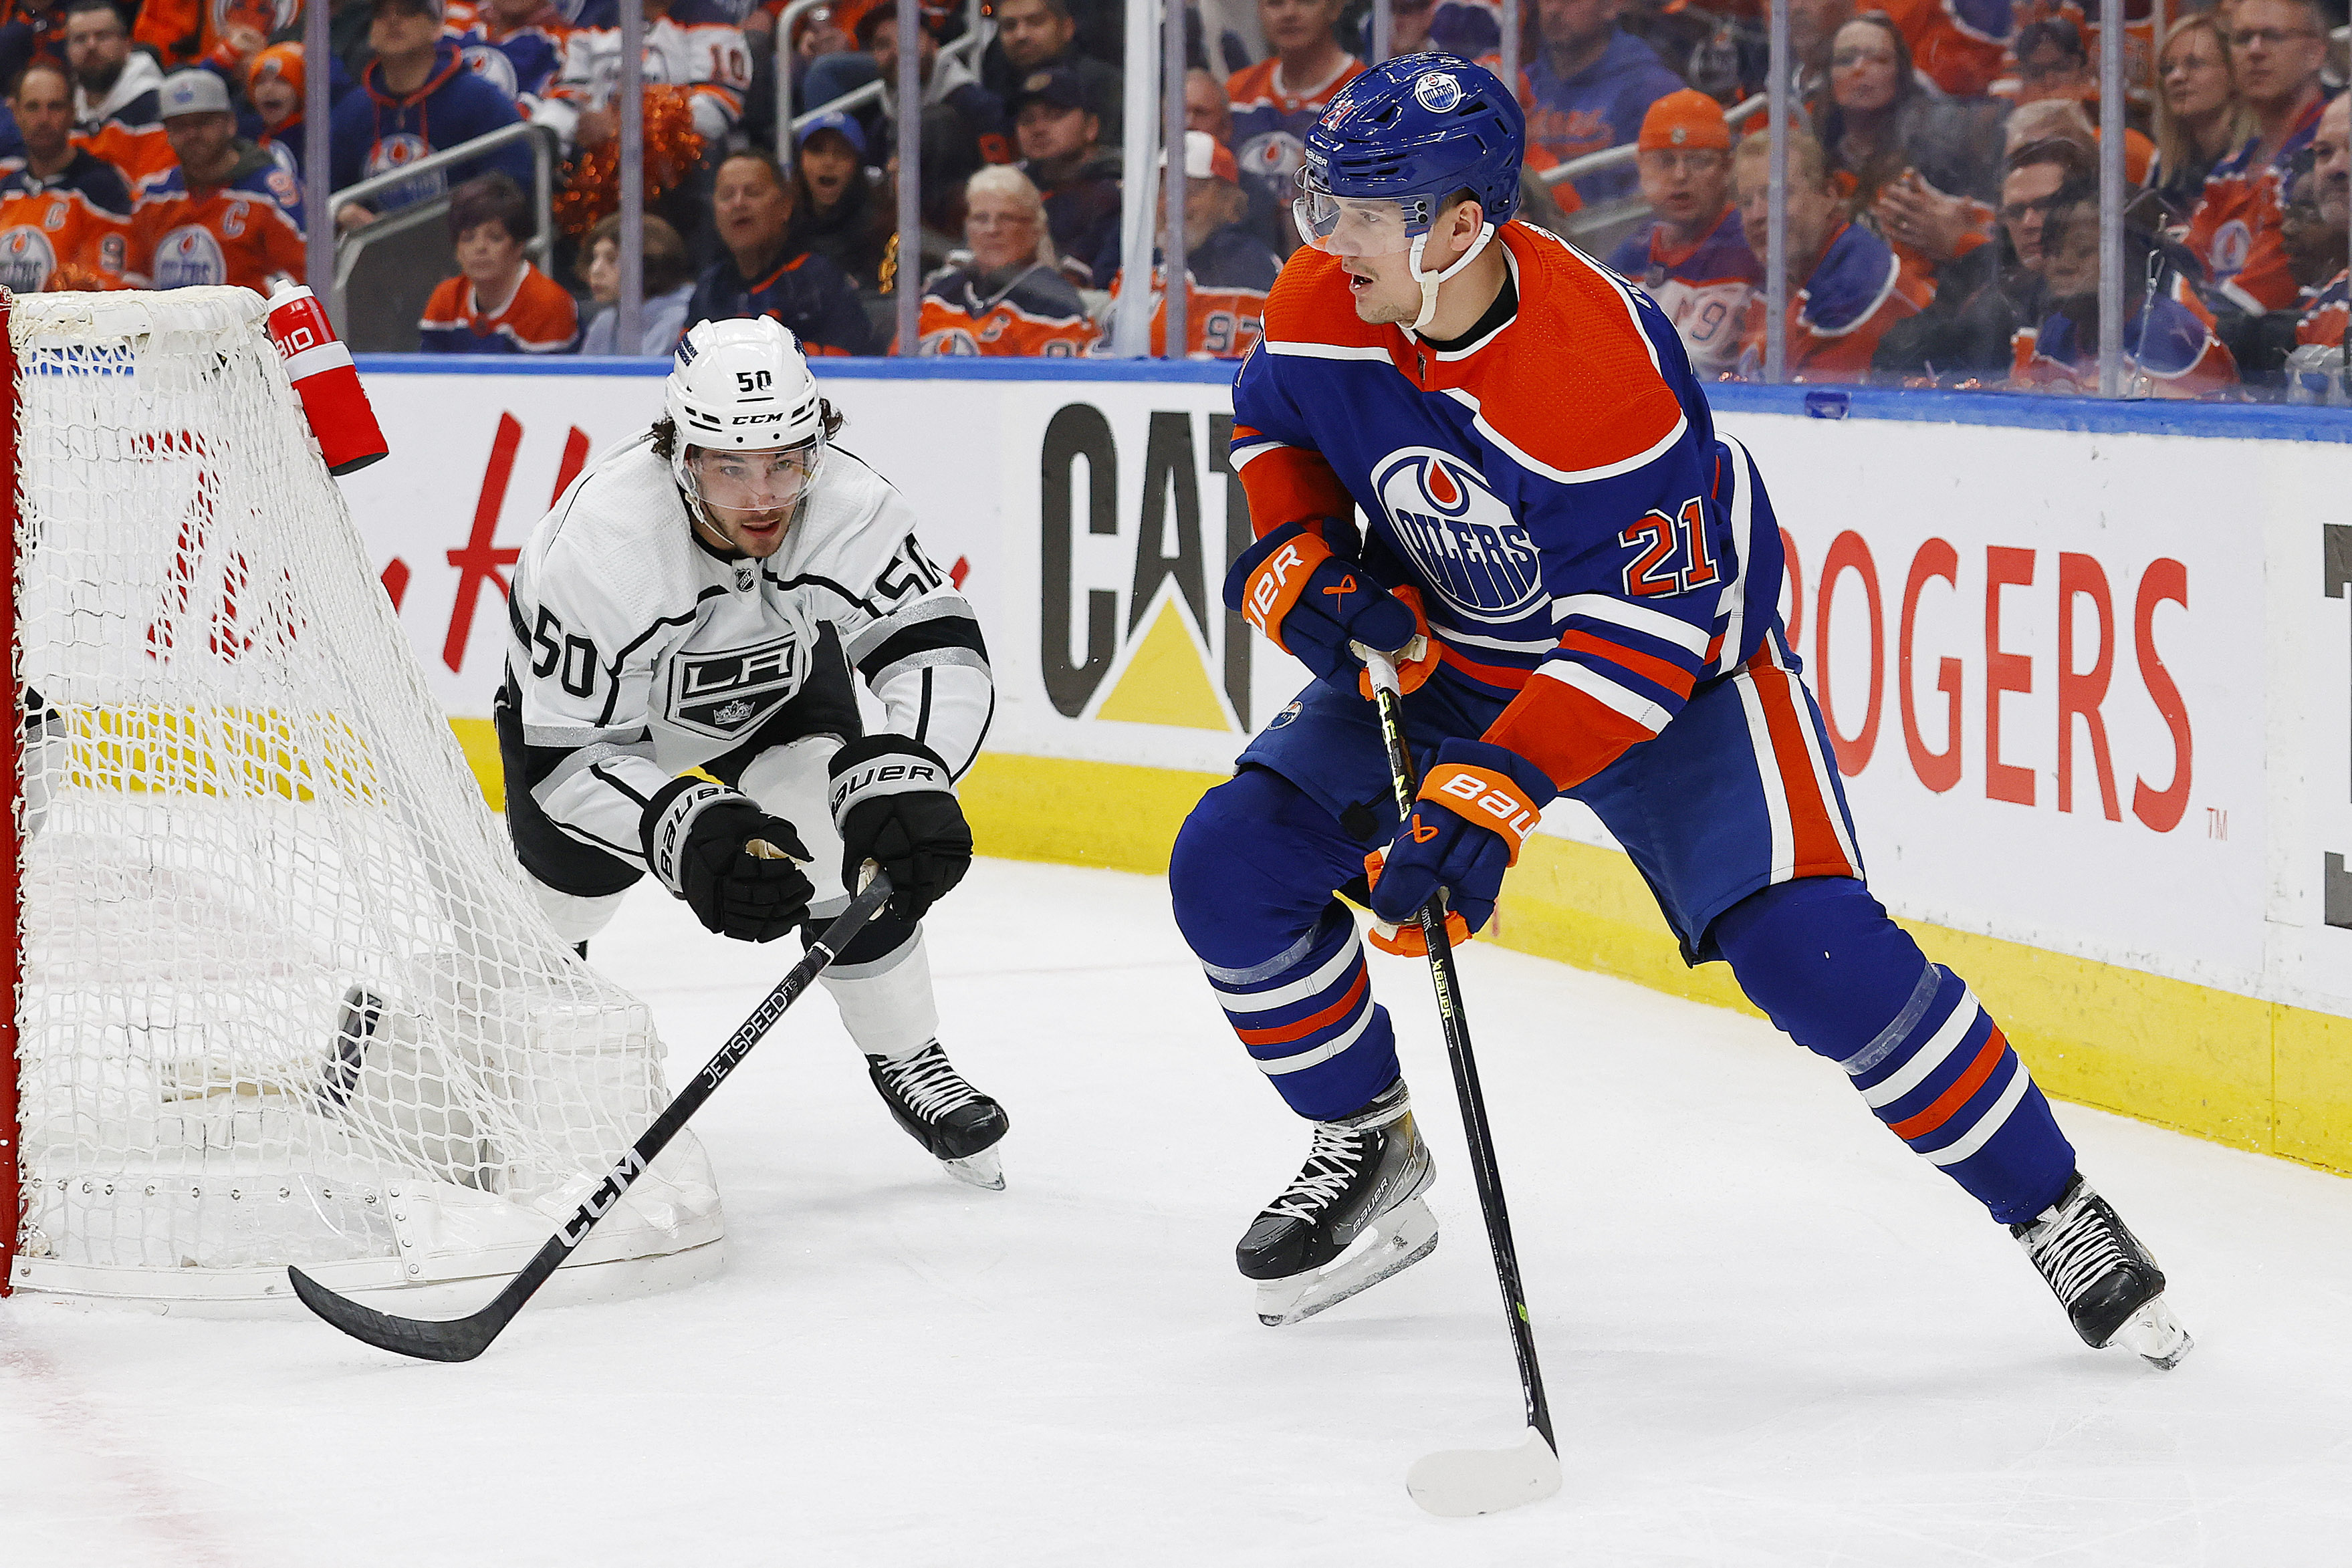 Nick Bjugstad, Oilers grab 3-2 series lead vs. Kings